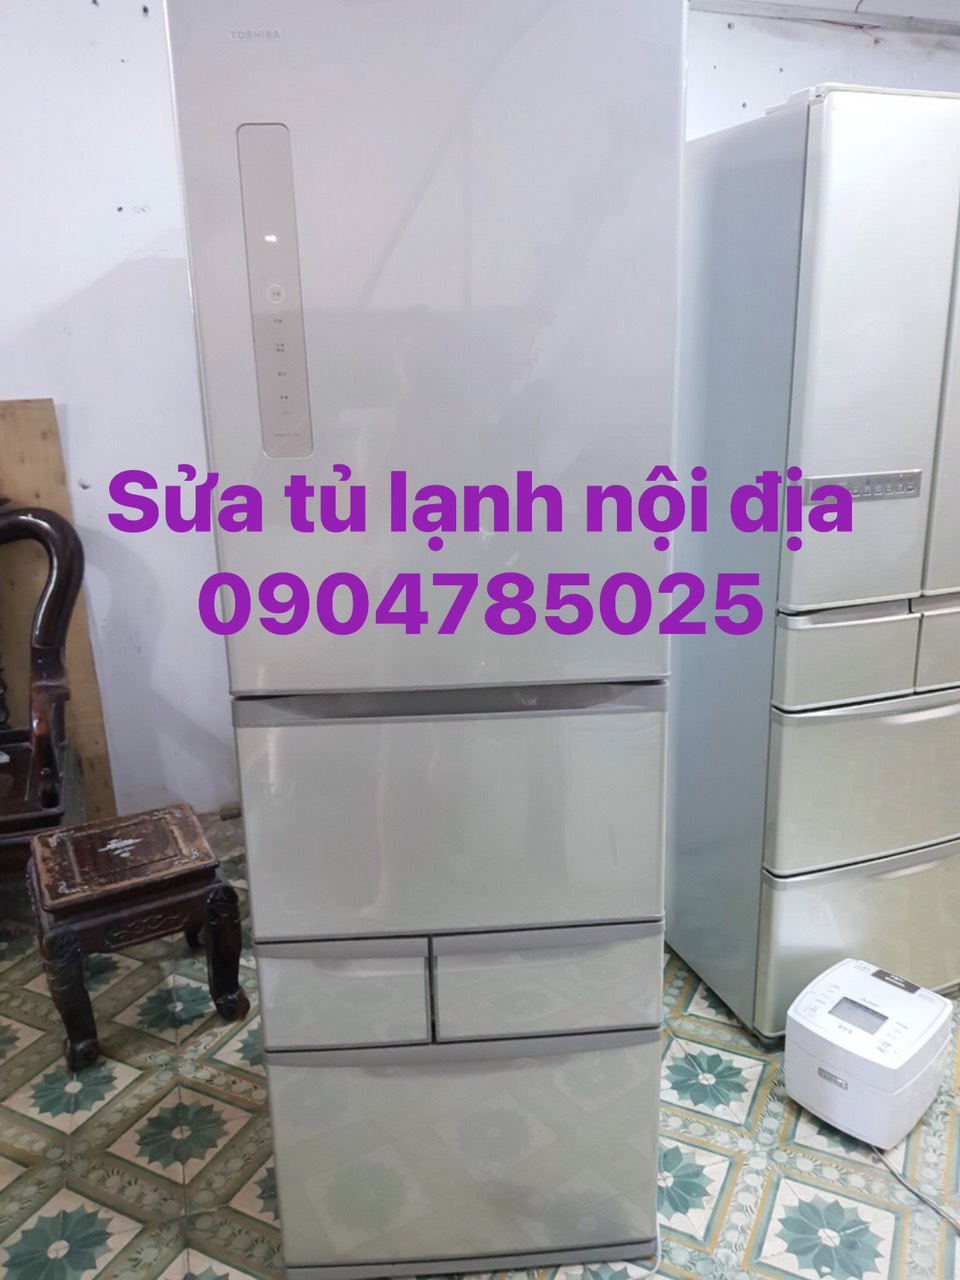 Cơ sở sửa chữa tủ lạnh nội địa 100v 110v  tại nhà Hà Nội